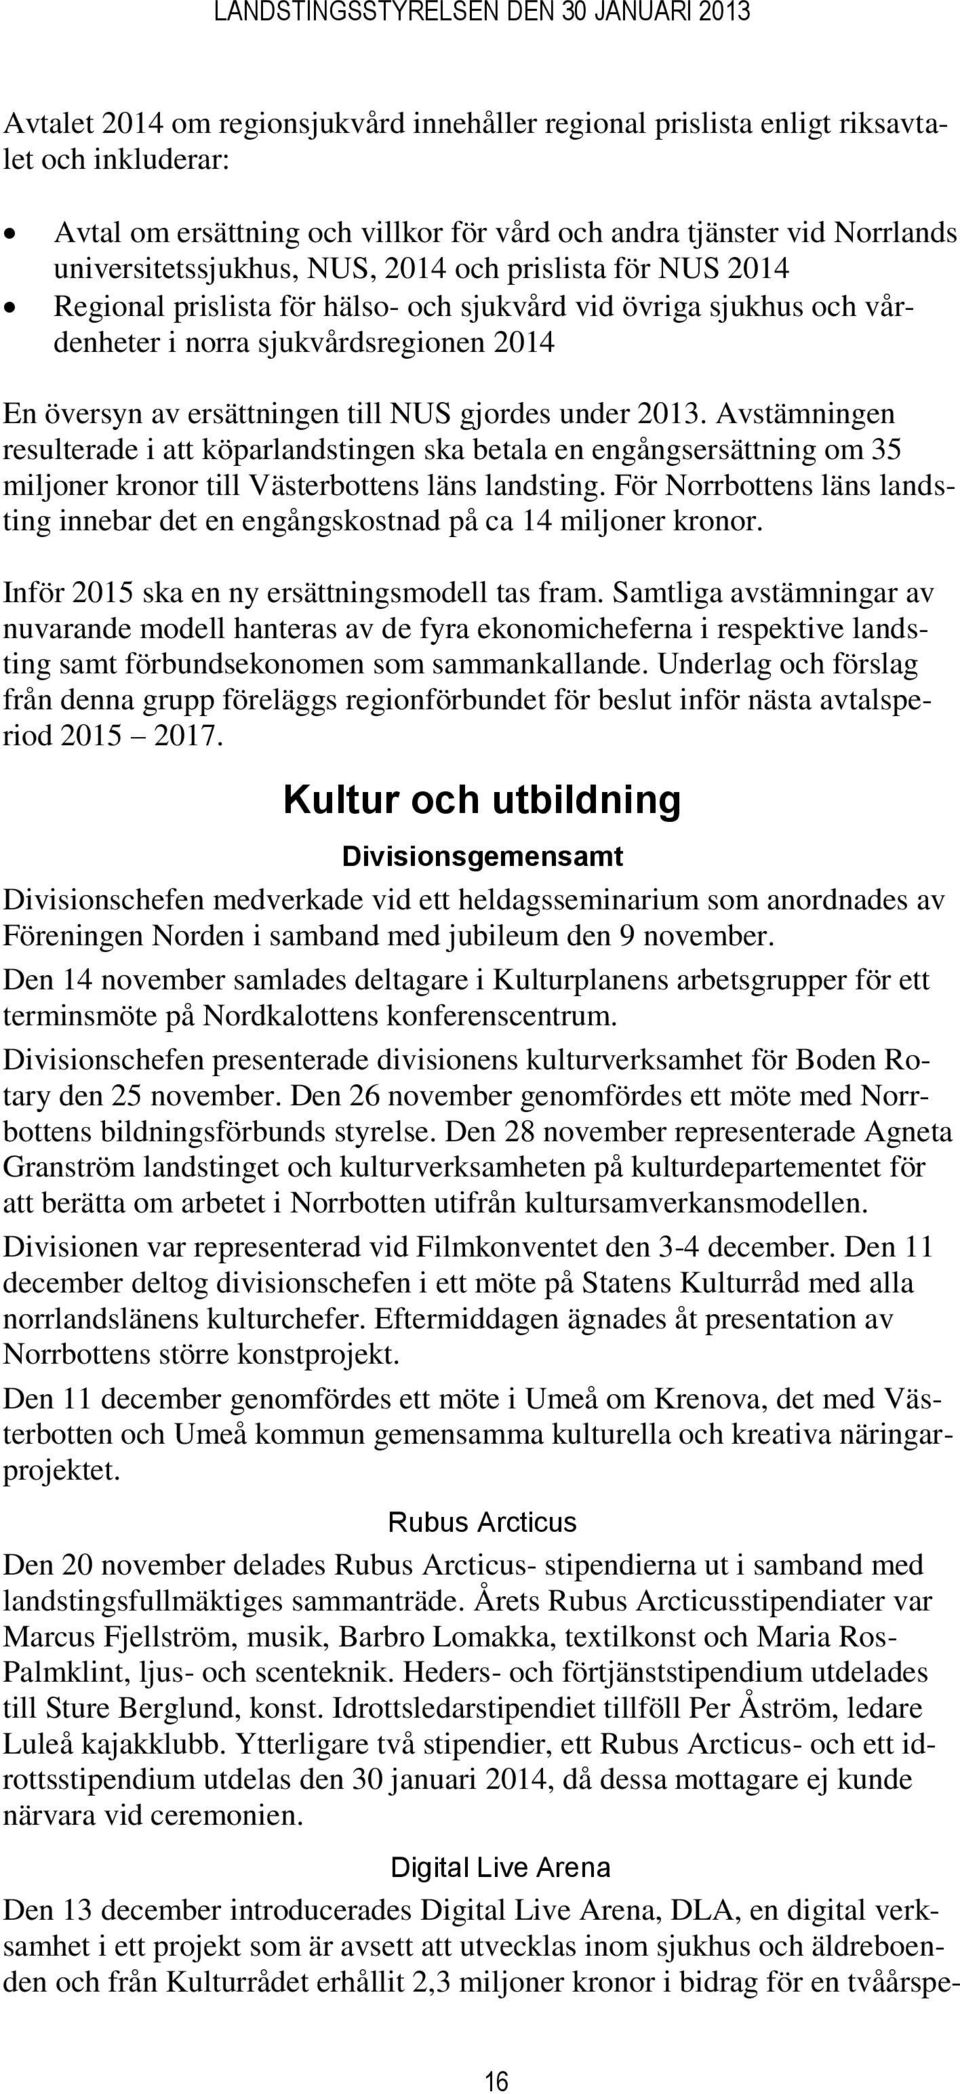 Avstämningen resulterade i att köparlandstingen ska betala en engångsersättning om 35 miljoner kronor till Västerbottens läns landsting.